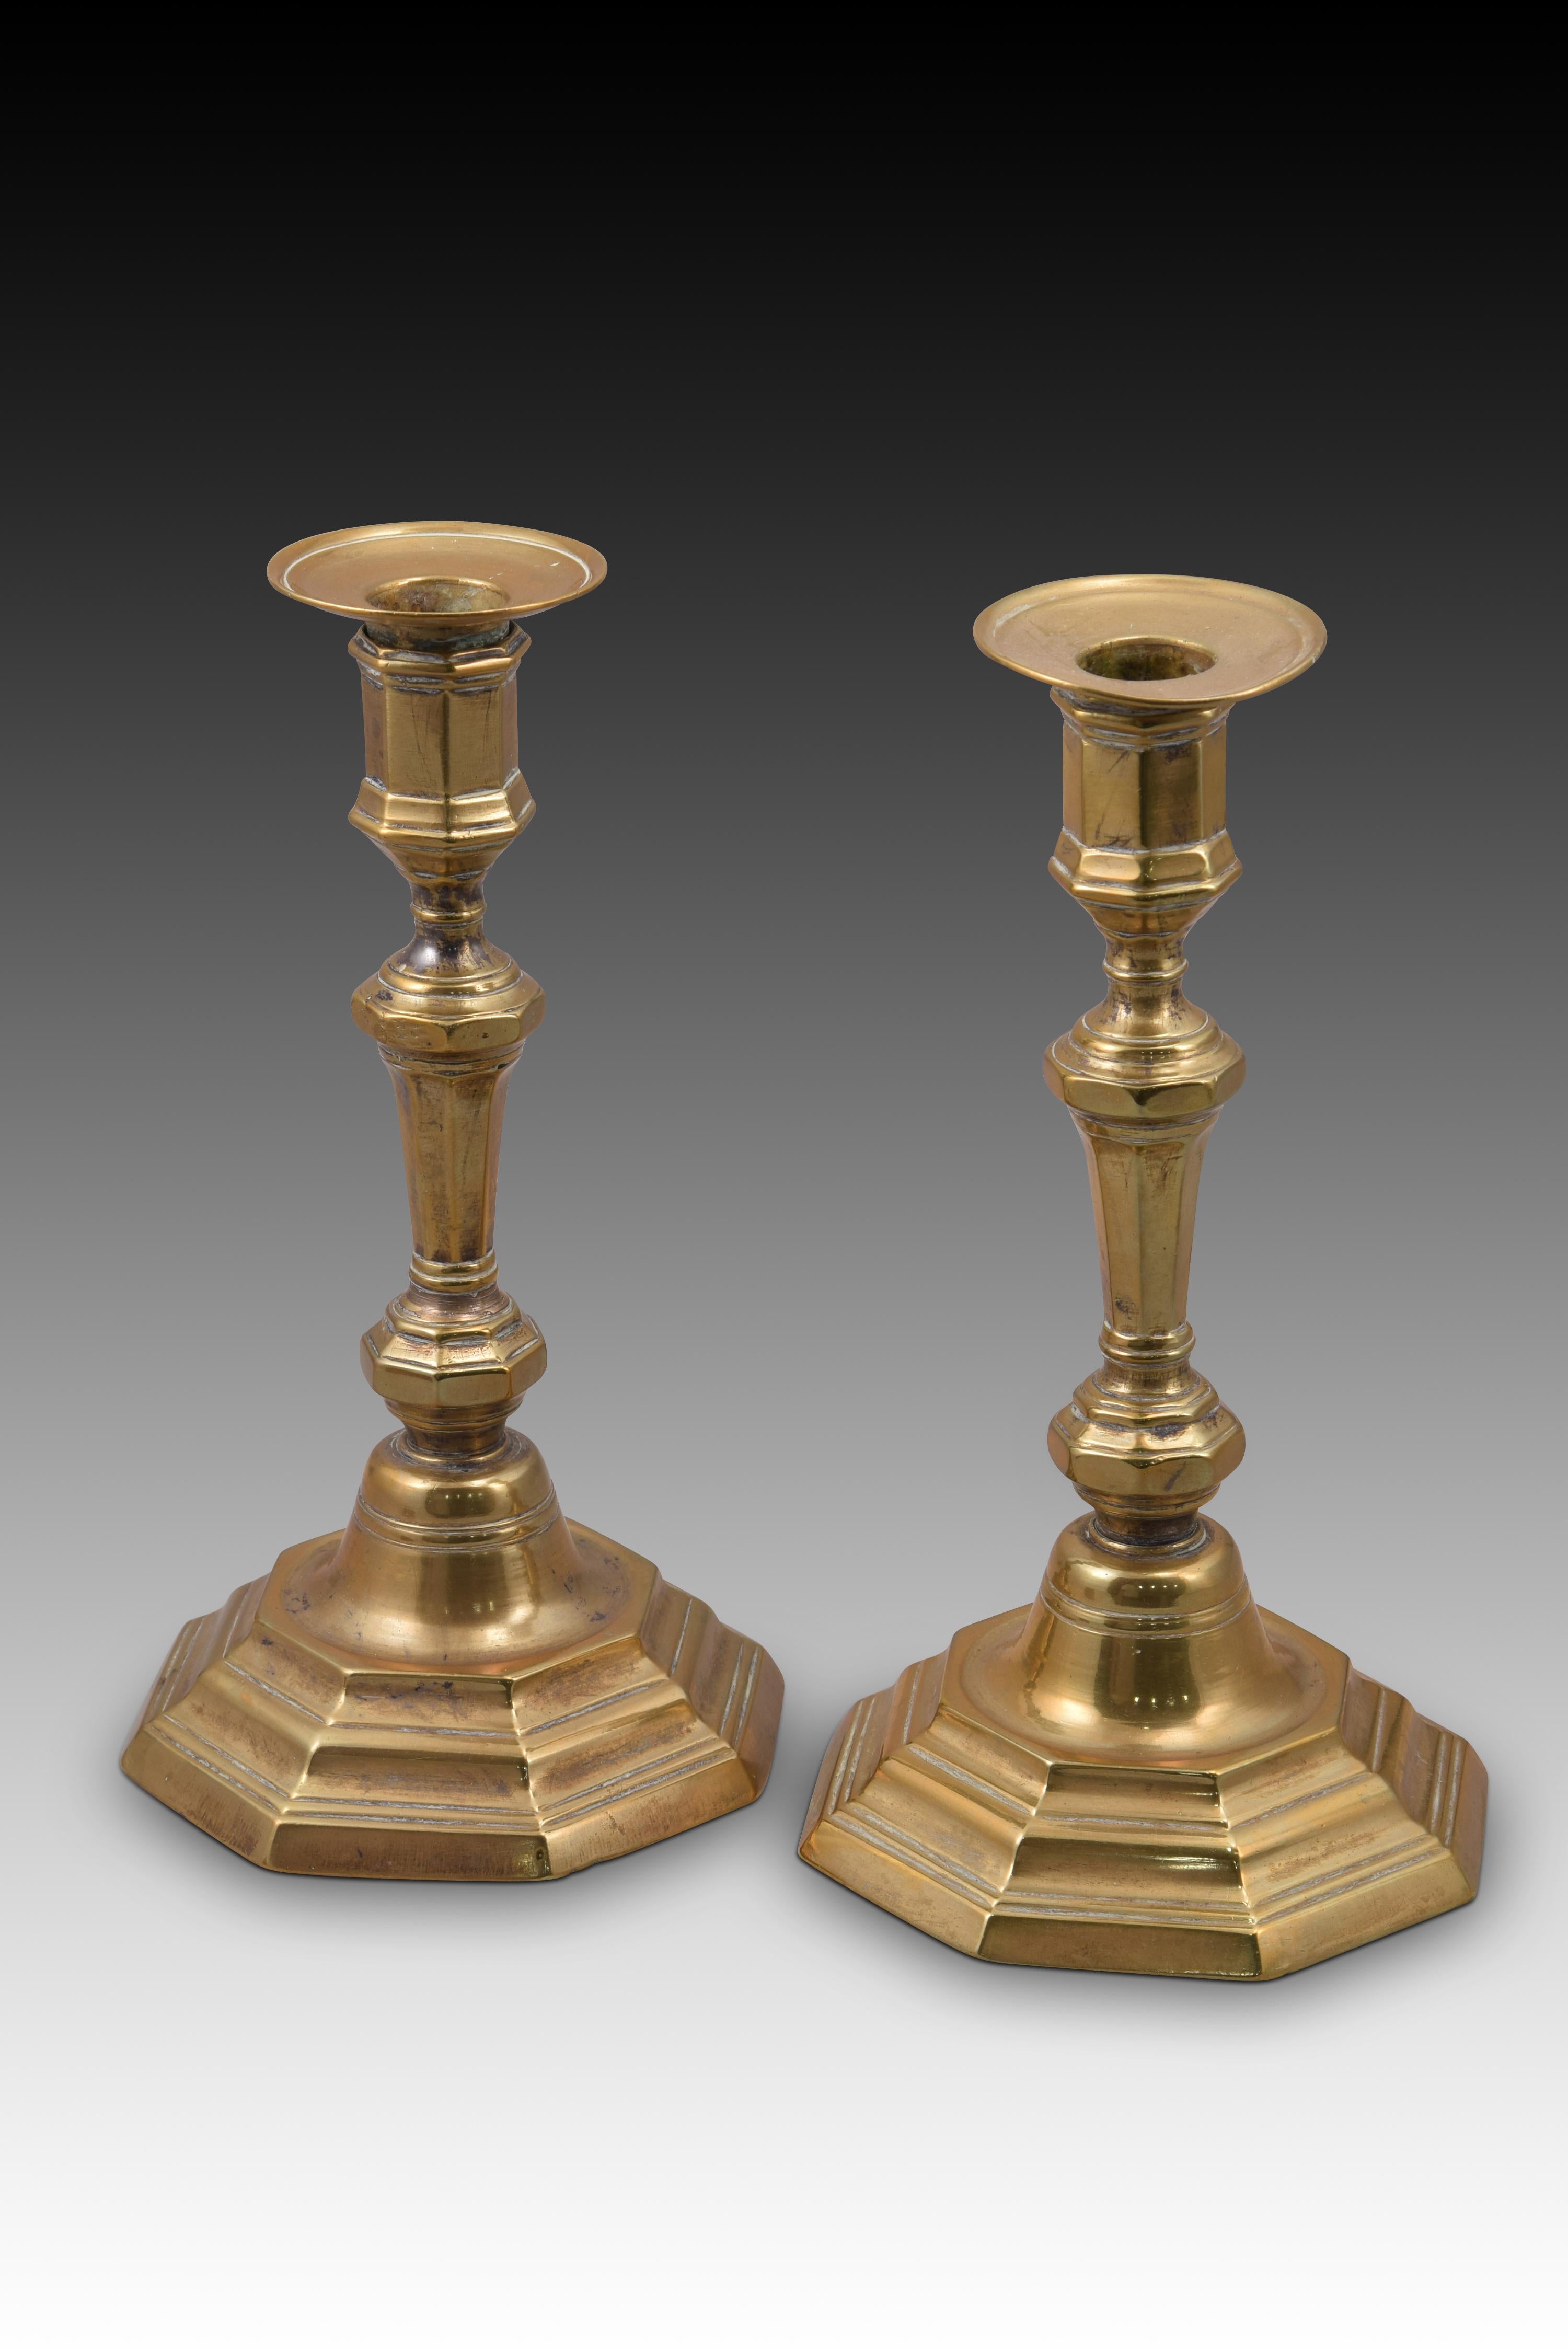 Paar Kerzenständer. Bronze. Frankreich, 18. Jahrhundert. 
Paar Kerzenständer aus Bronze mit polygonalem, nach oben und zur Mitte hin abgestuftem Sockel, der mit glatten Leisten verziert ist, einer balustradenförmigen Achse (ebenfalls mit polygonalem